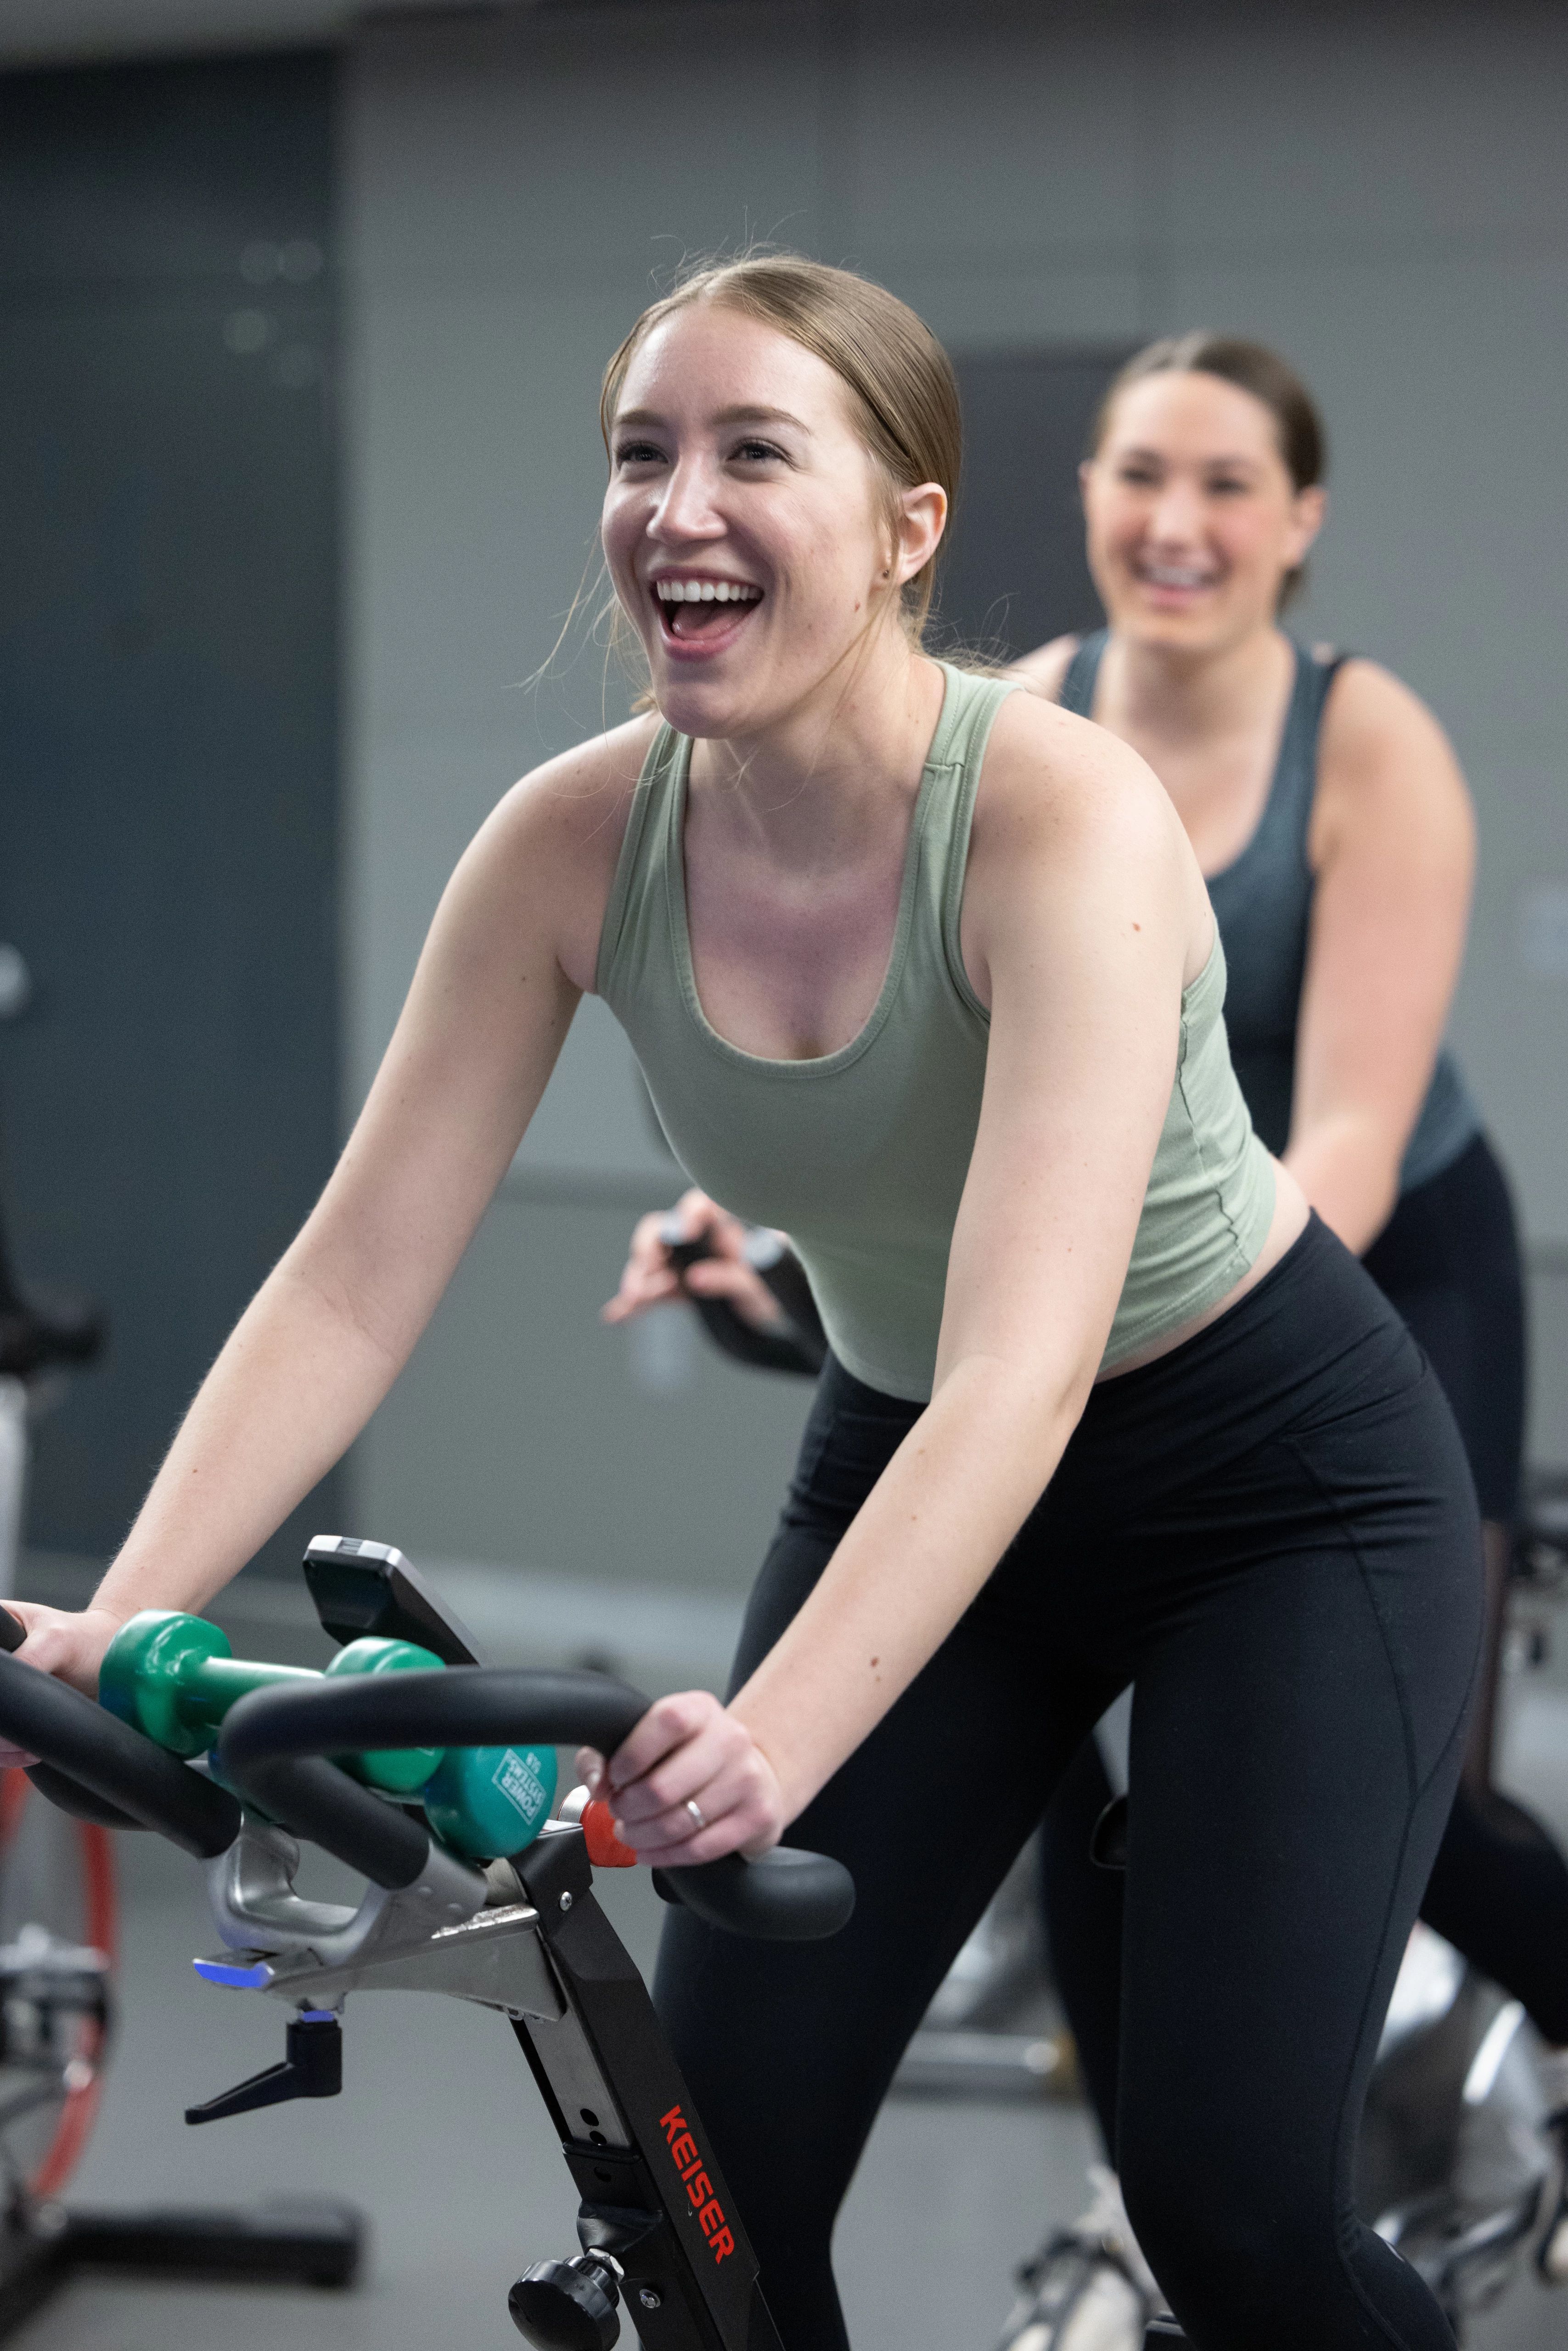 Female student smiling on a bike machine.